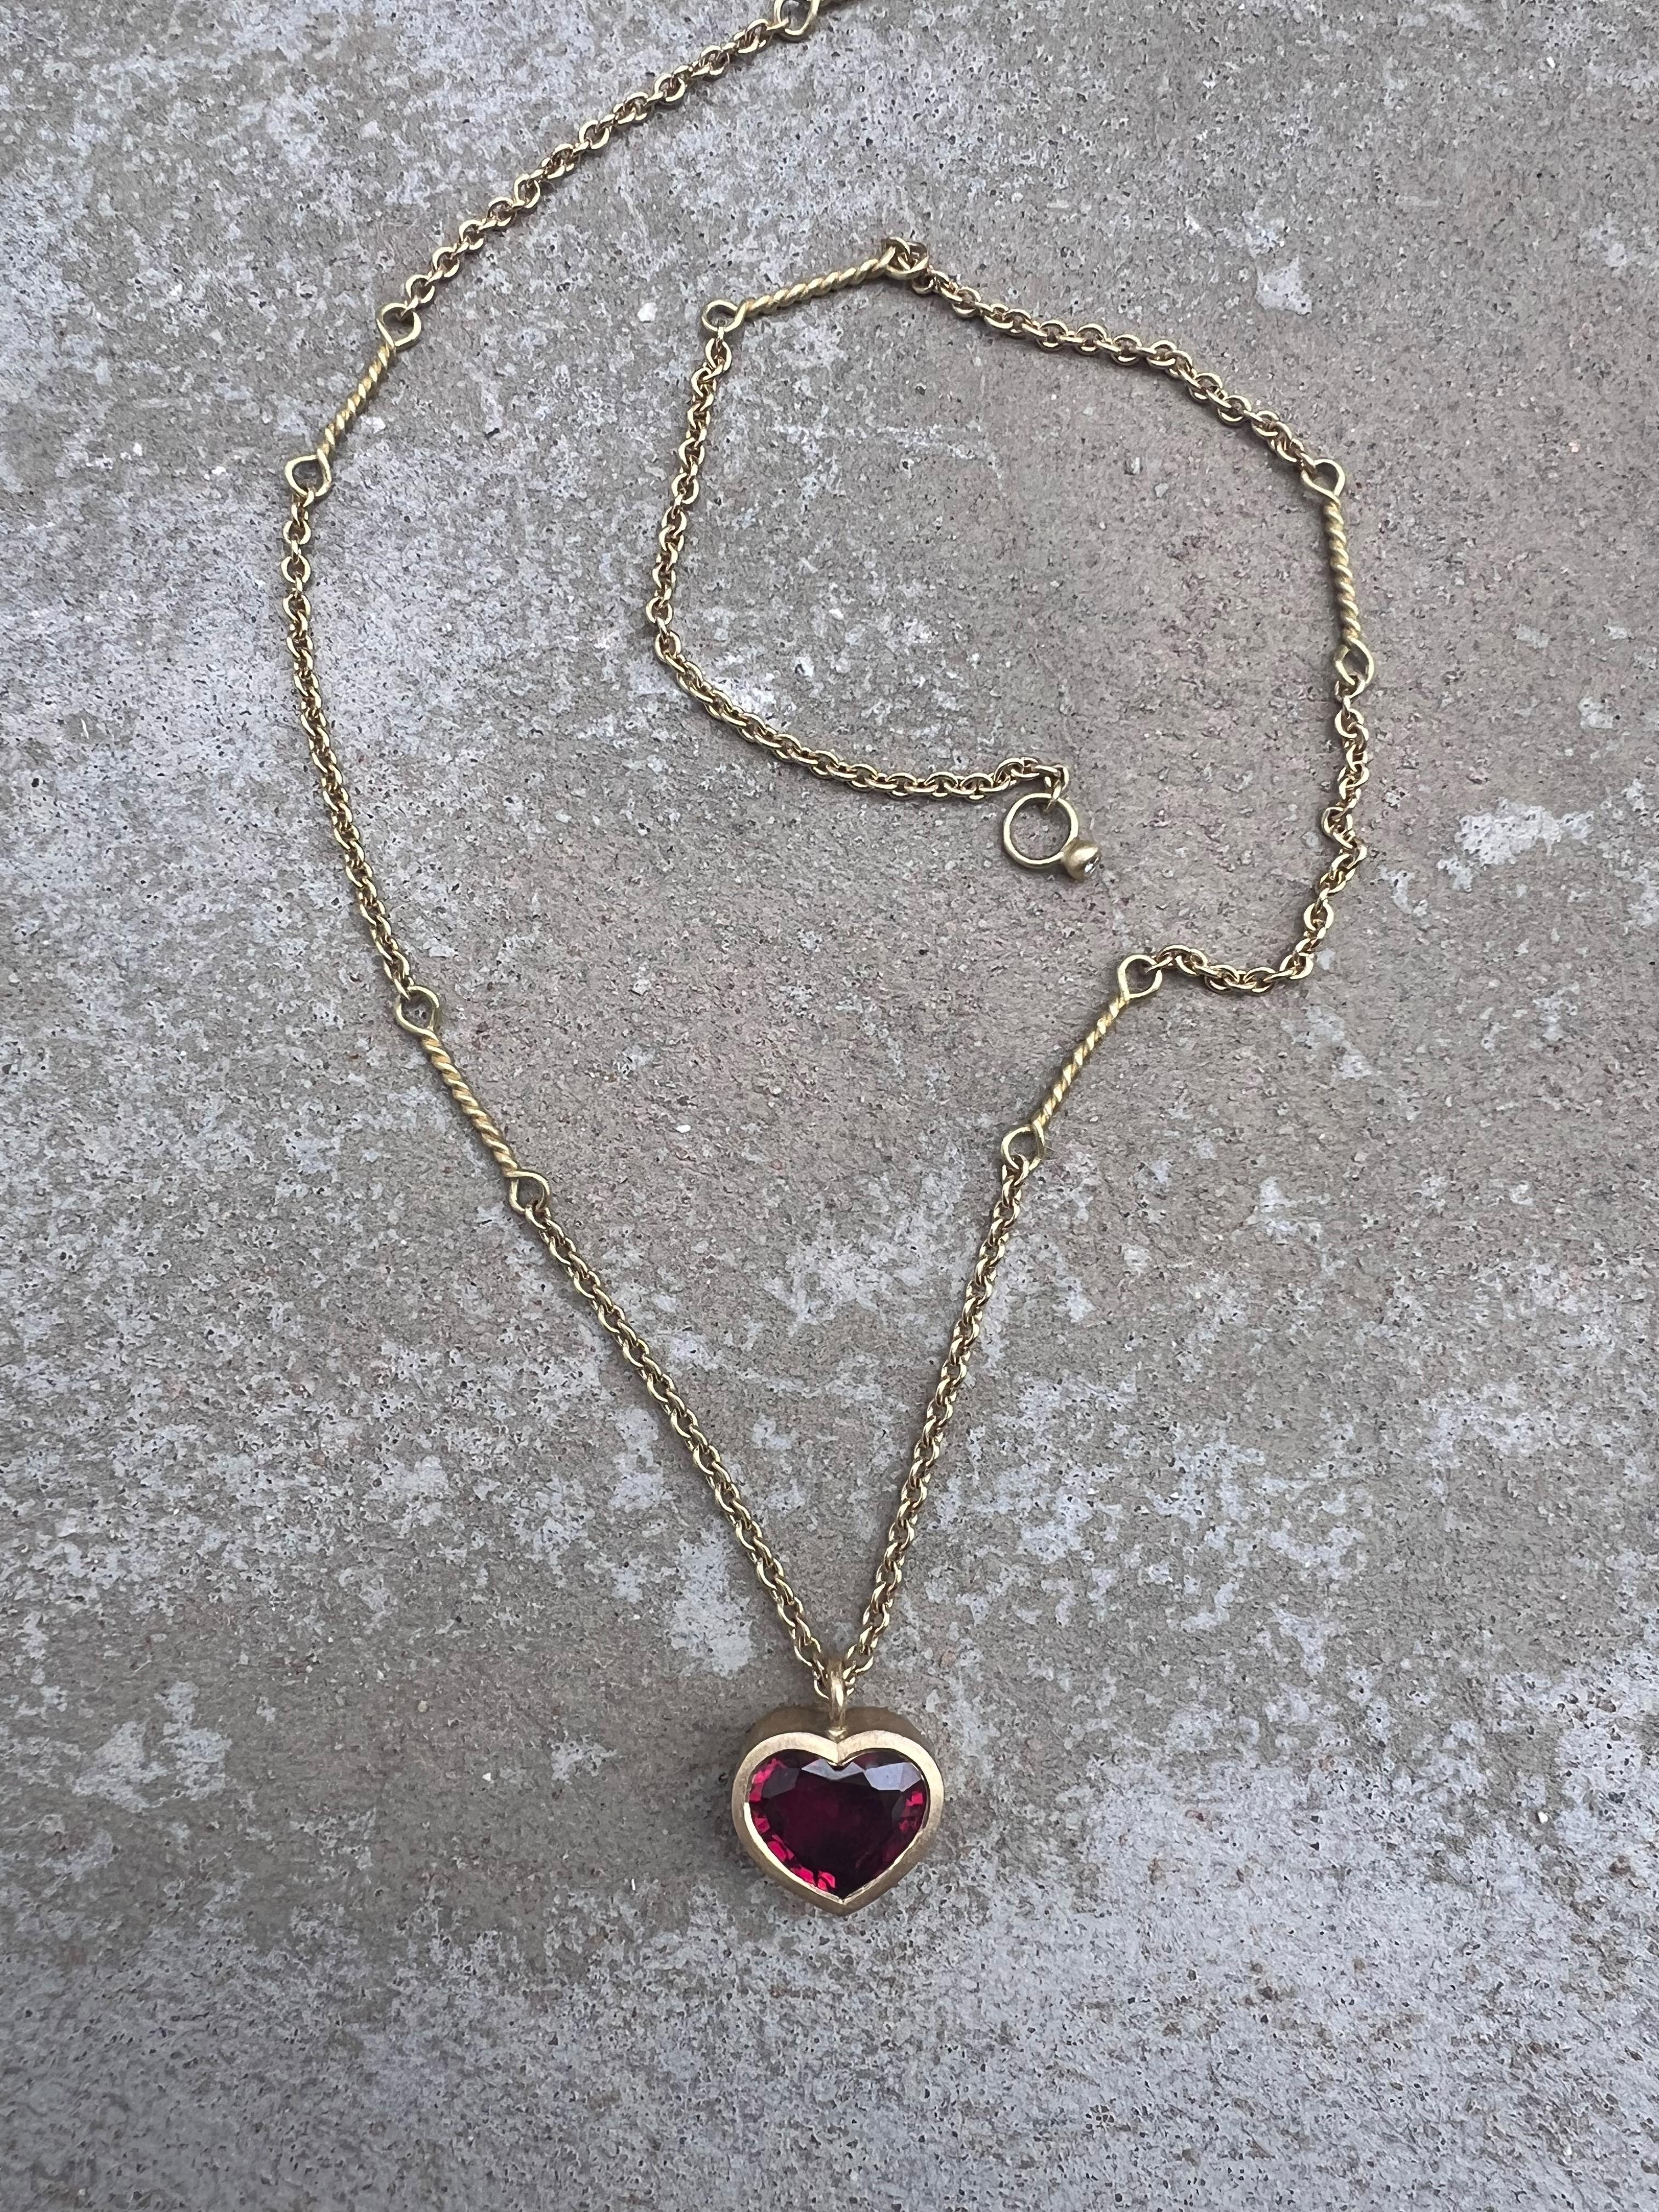 L'Elegance du cœur : Le collier à chaîne torsadée en rubis

Laissez-vous séduire par le romantisme d'une élégance intemporelle avec notre exquis collier à chaîne torsadée en forme de cœur en rubis, un emblème éblouissant d'amour et de